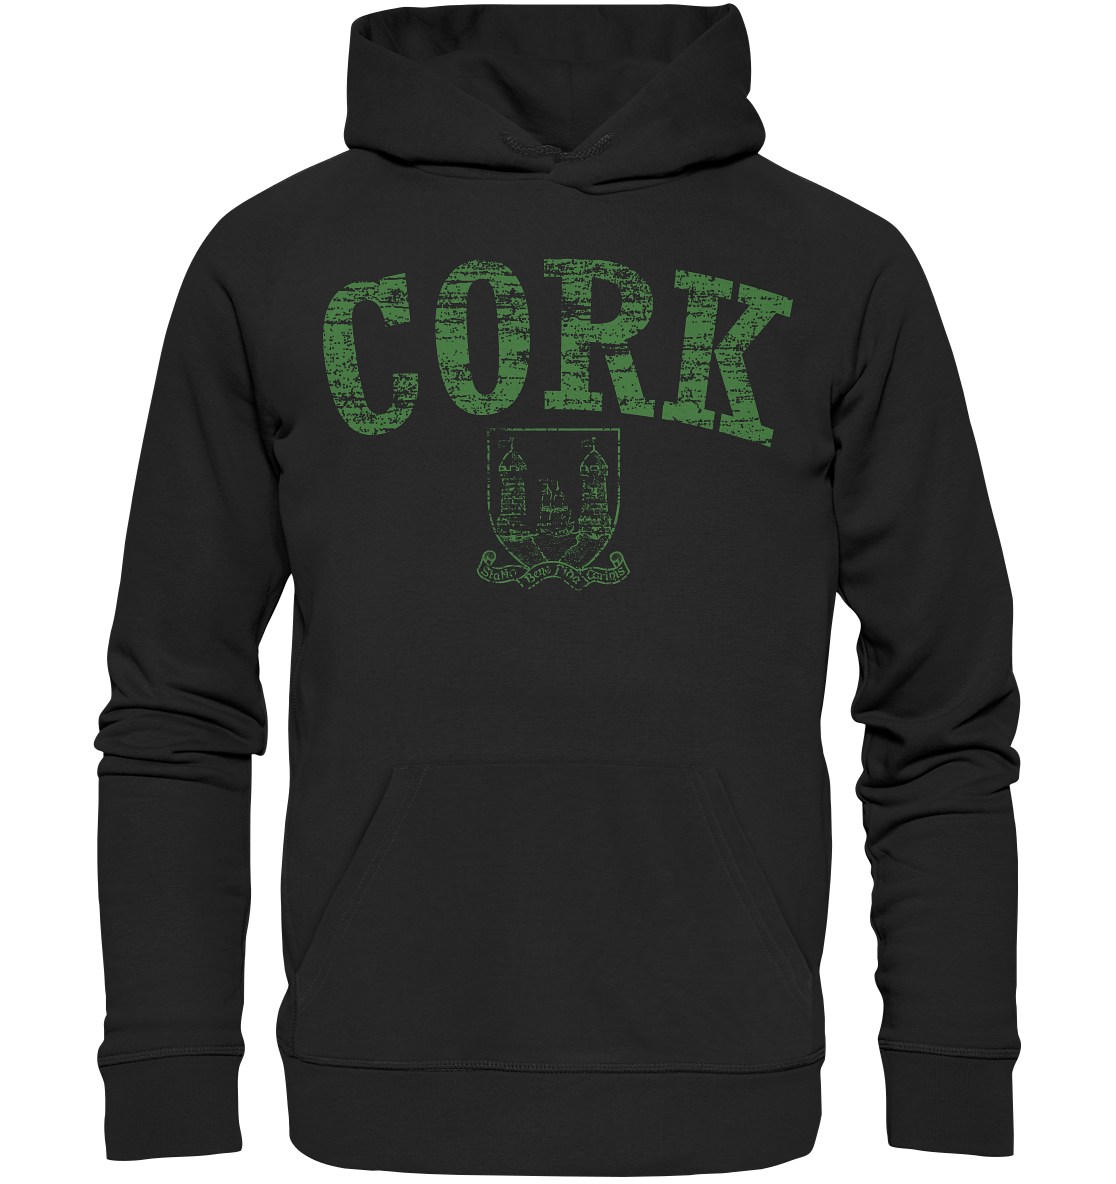 "Cork - Statio Bene Fida Carinis" - Premium Unisex Hoodie